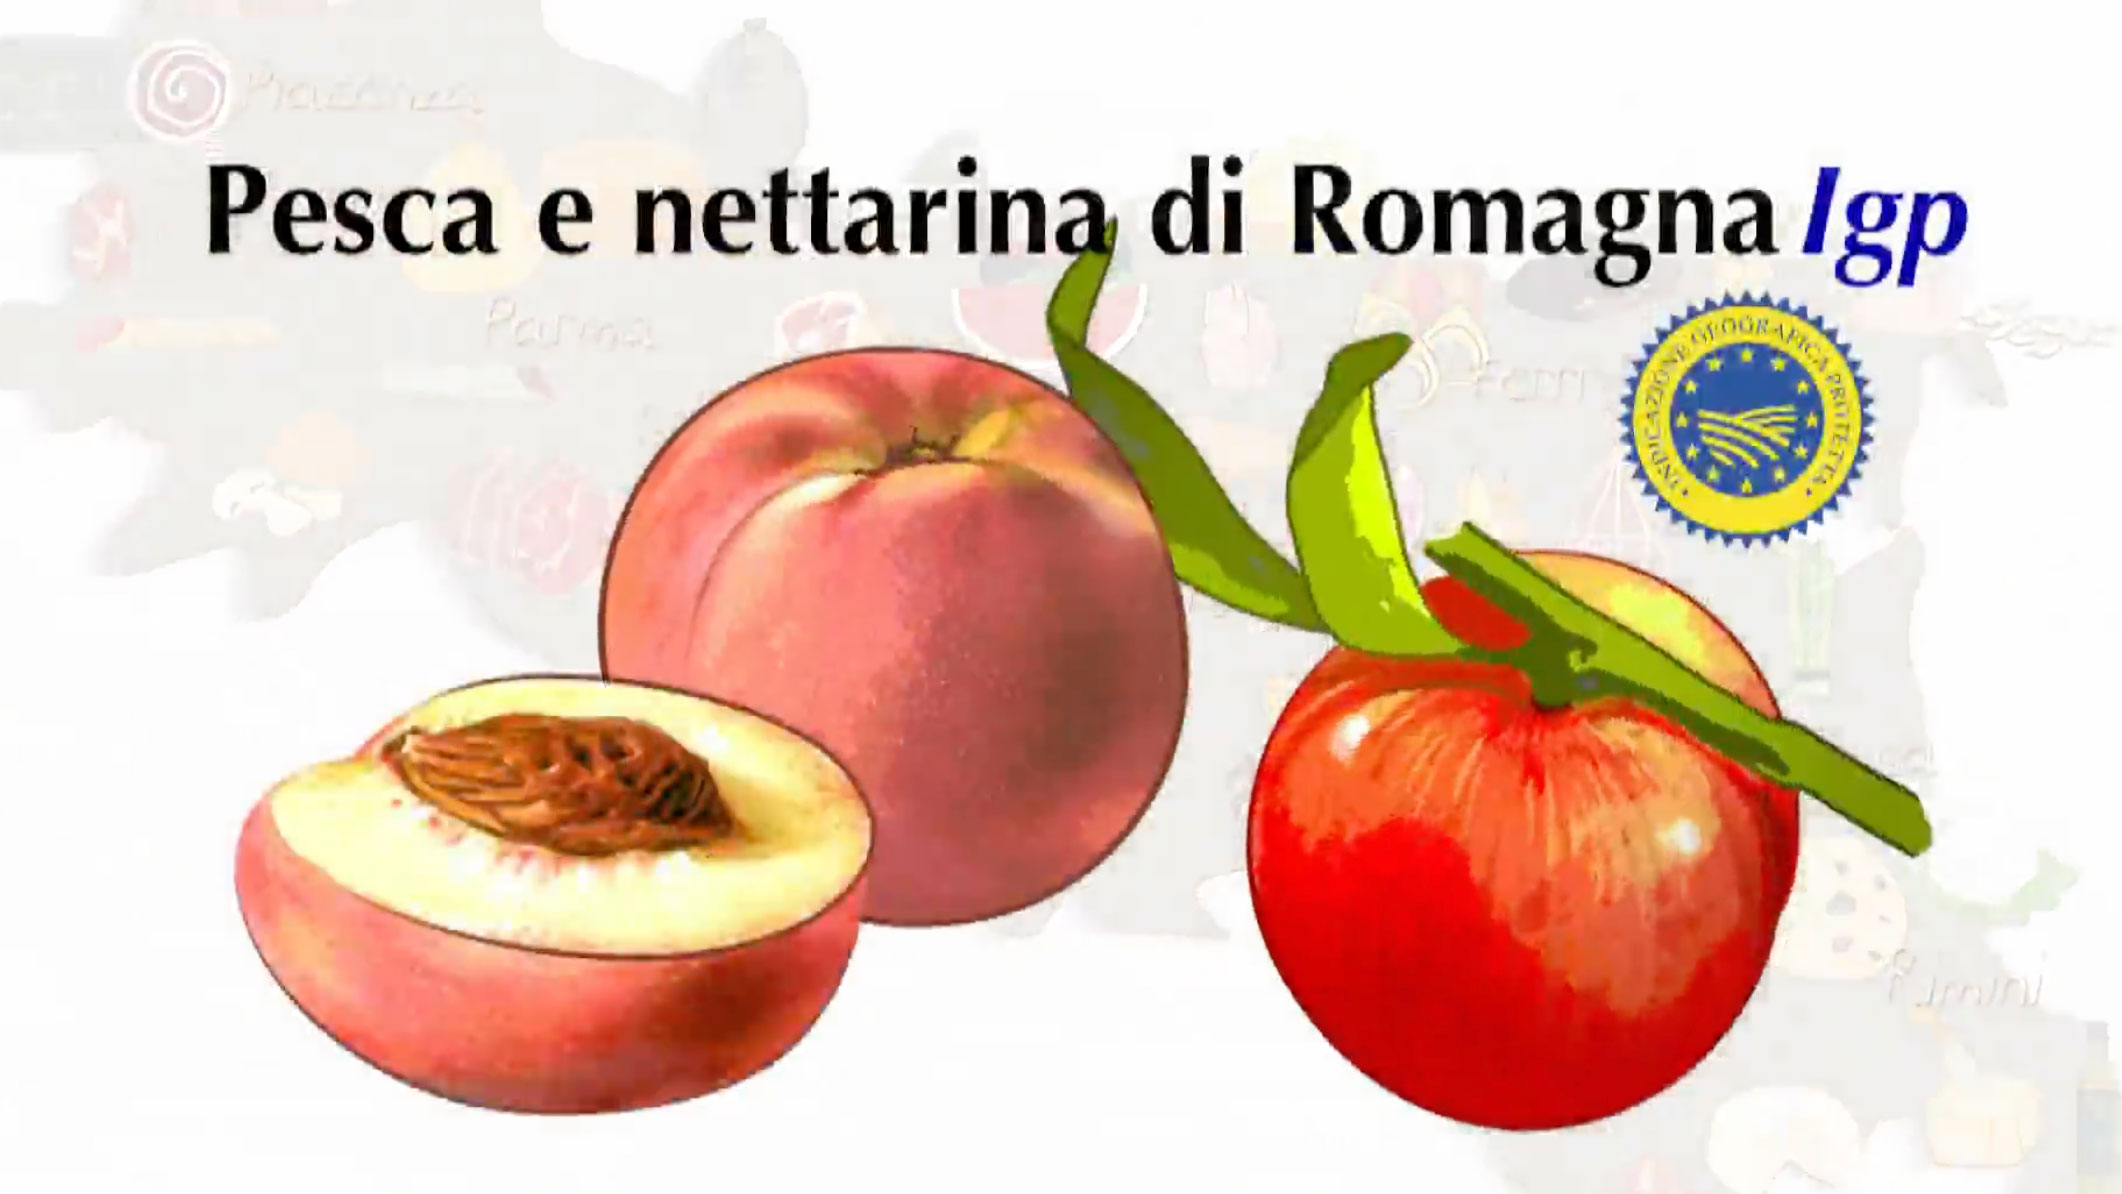 Le pesche e nettarine di Romagna Igp colorano tutta l'estate - immagine di copertina